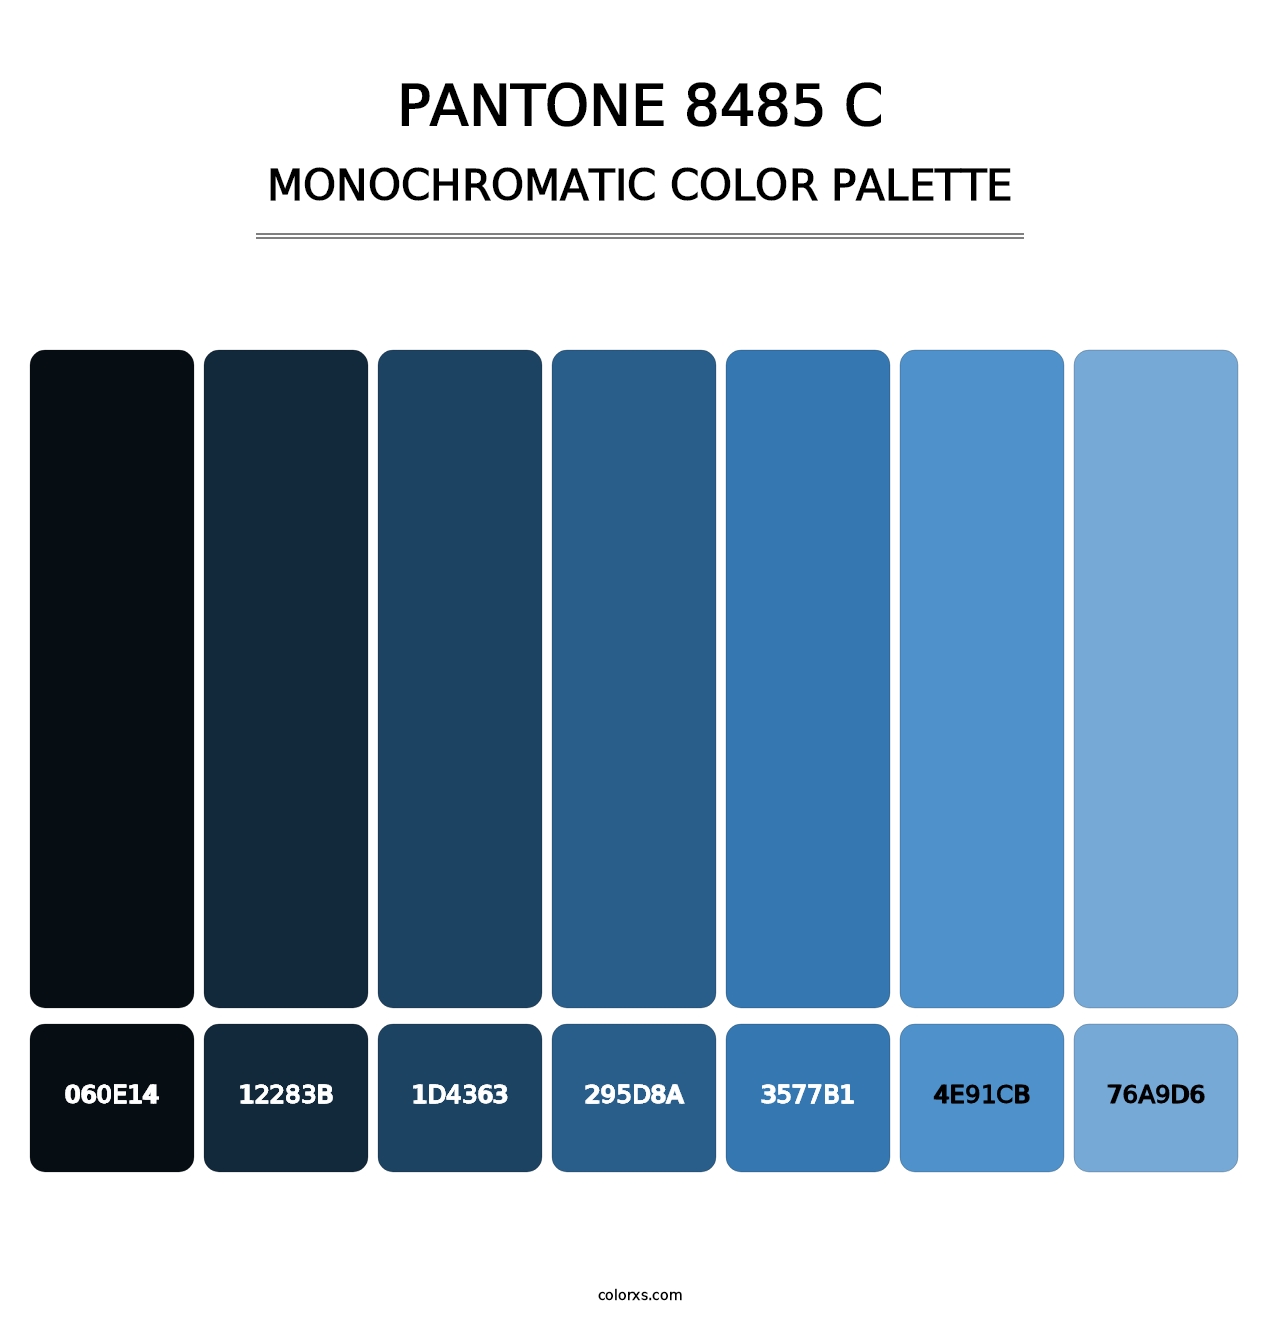 PANTONE 8485 C - Monochromatic Color Palette